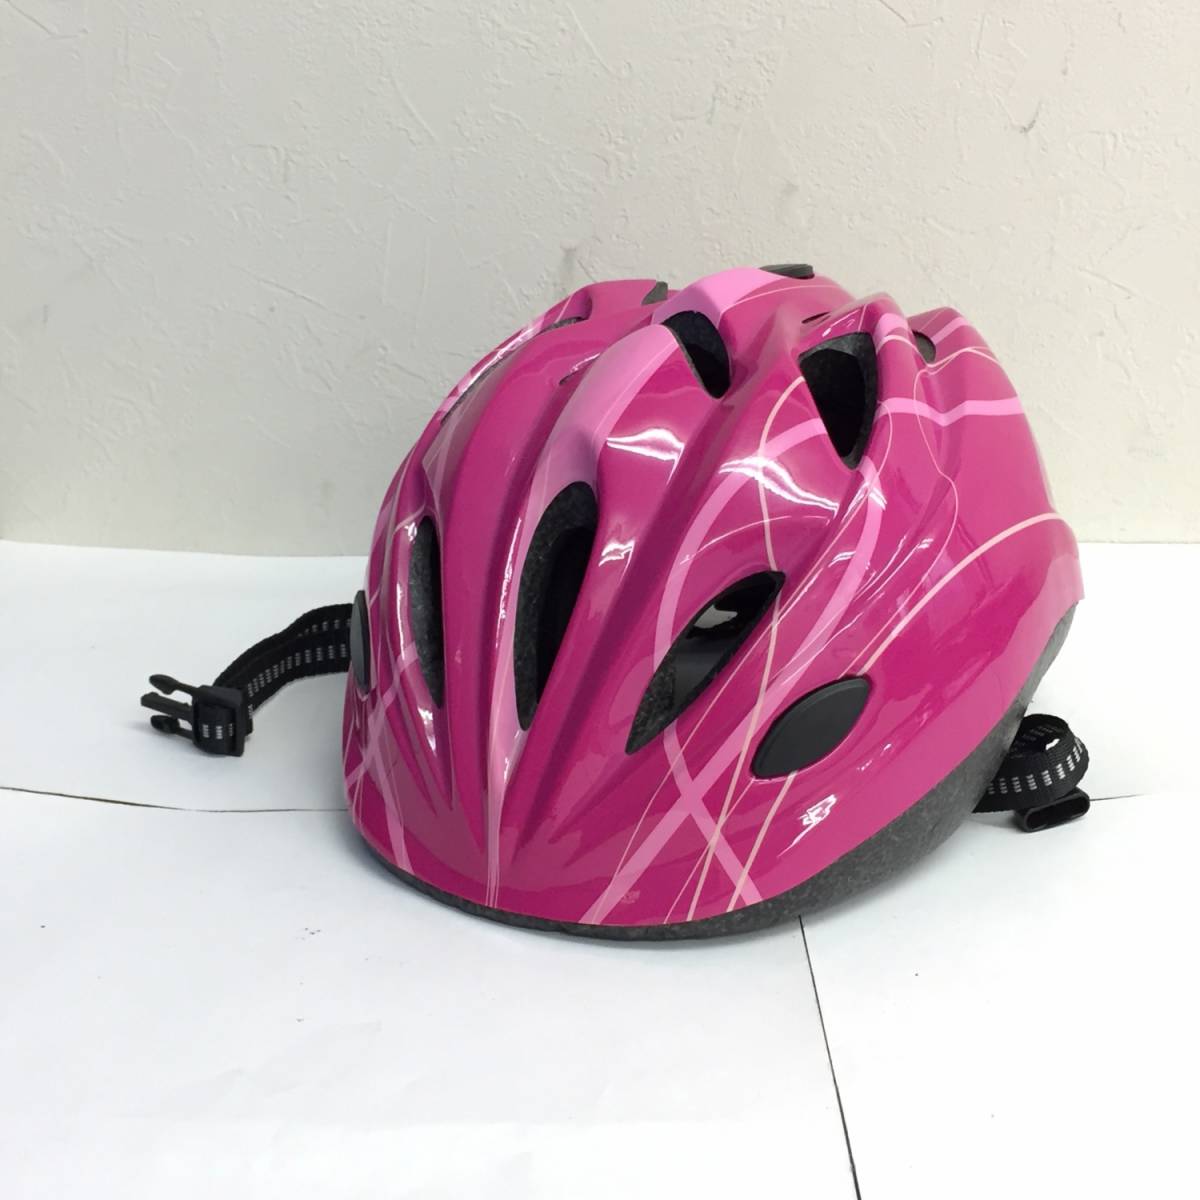 [ смешанные товары ] шлем [ велосипед для : ребенок / детский для ] размер :52~56cm( не достиг ) 2015 год производства акционерное общество sagisaka розовый серия ощущение б/у есть 